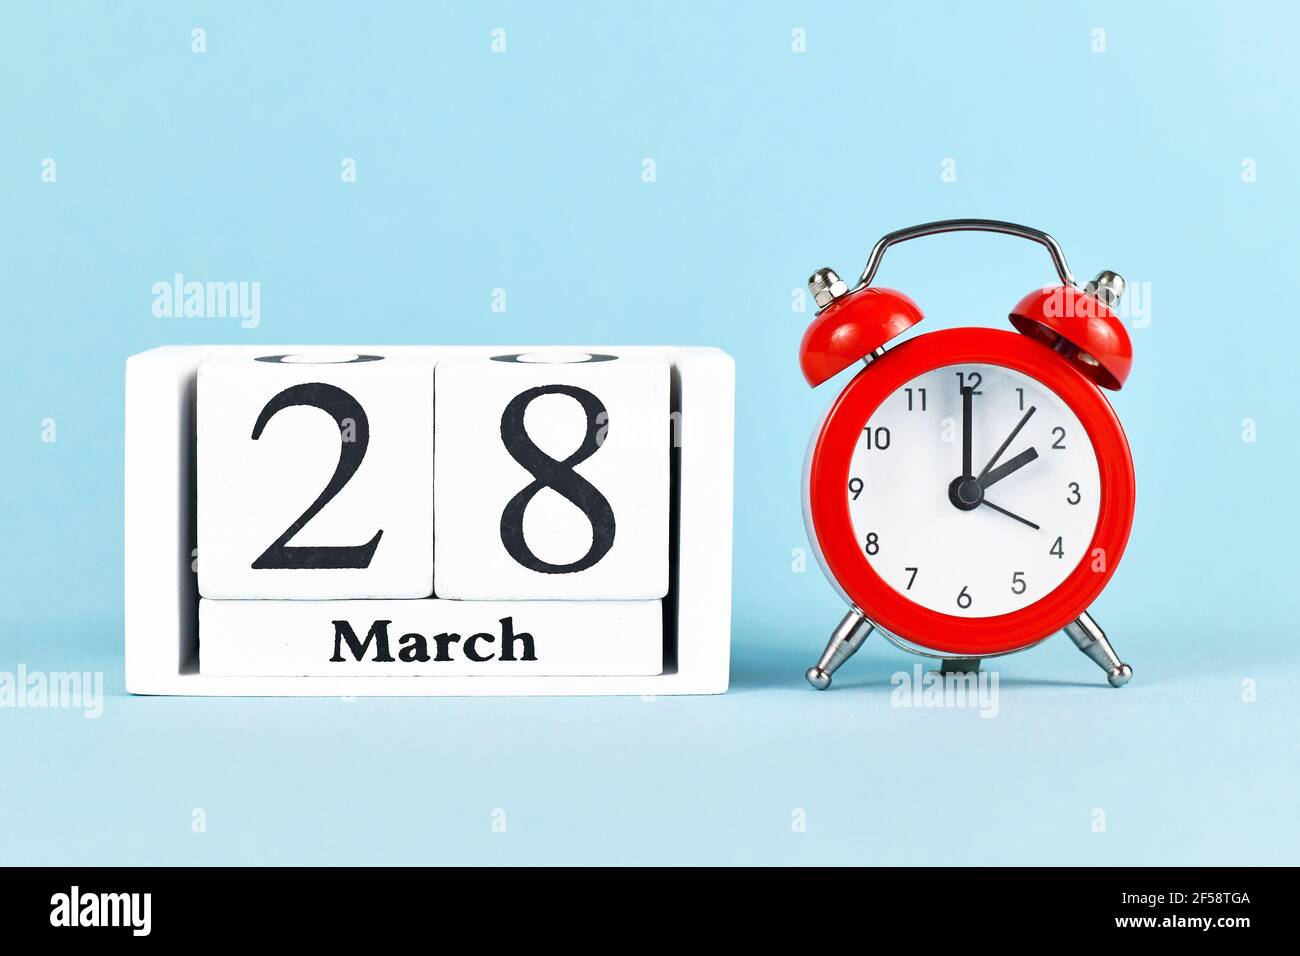 Concept de changement d'heure pour l'heure d'été dans Europe le 28 mars avec réveil rouge et calendrier sur bleu Banque D'Images